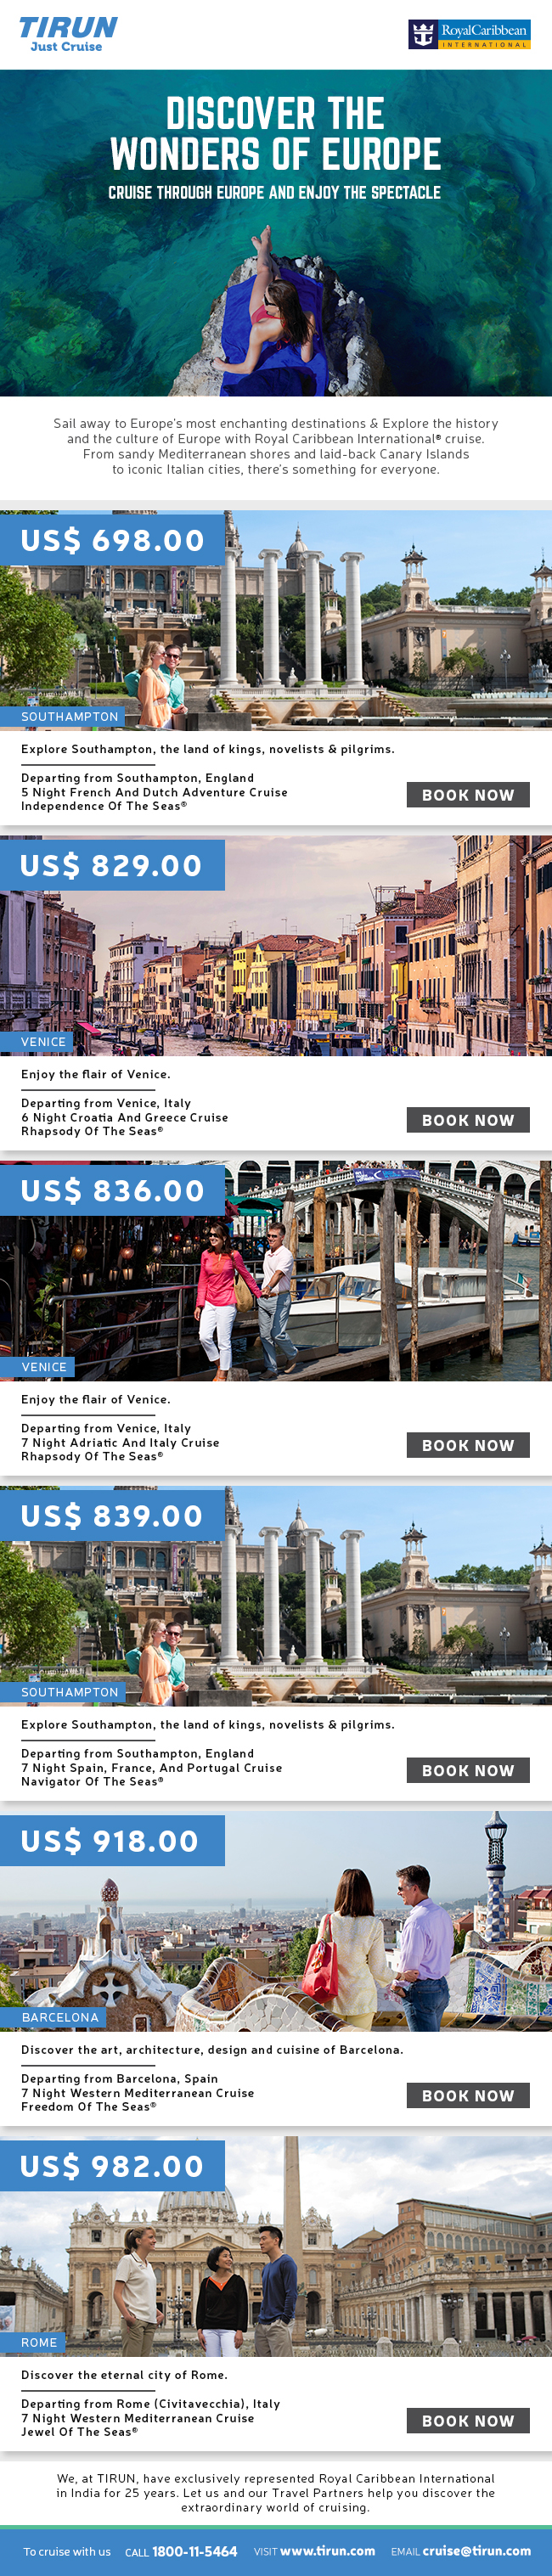 tirun Emailer Advertising  branding  Web cruise tour Travel